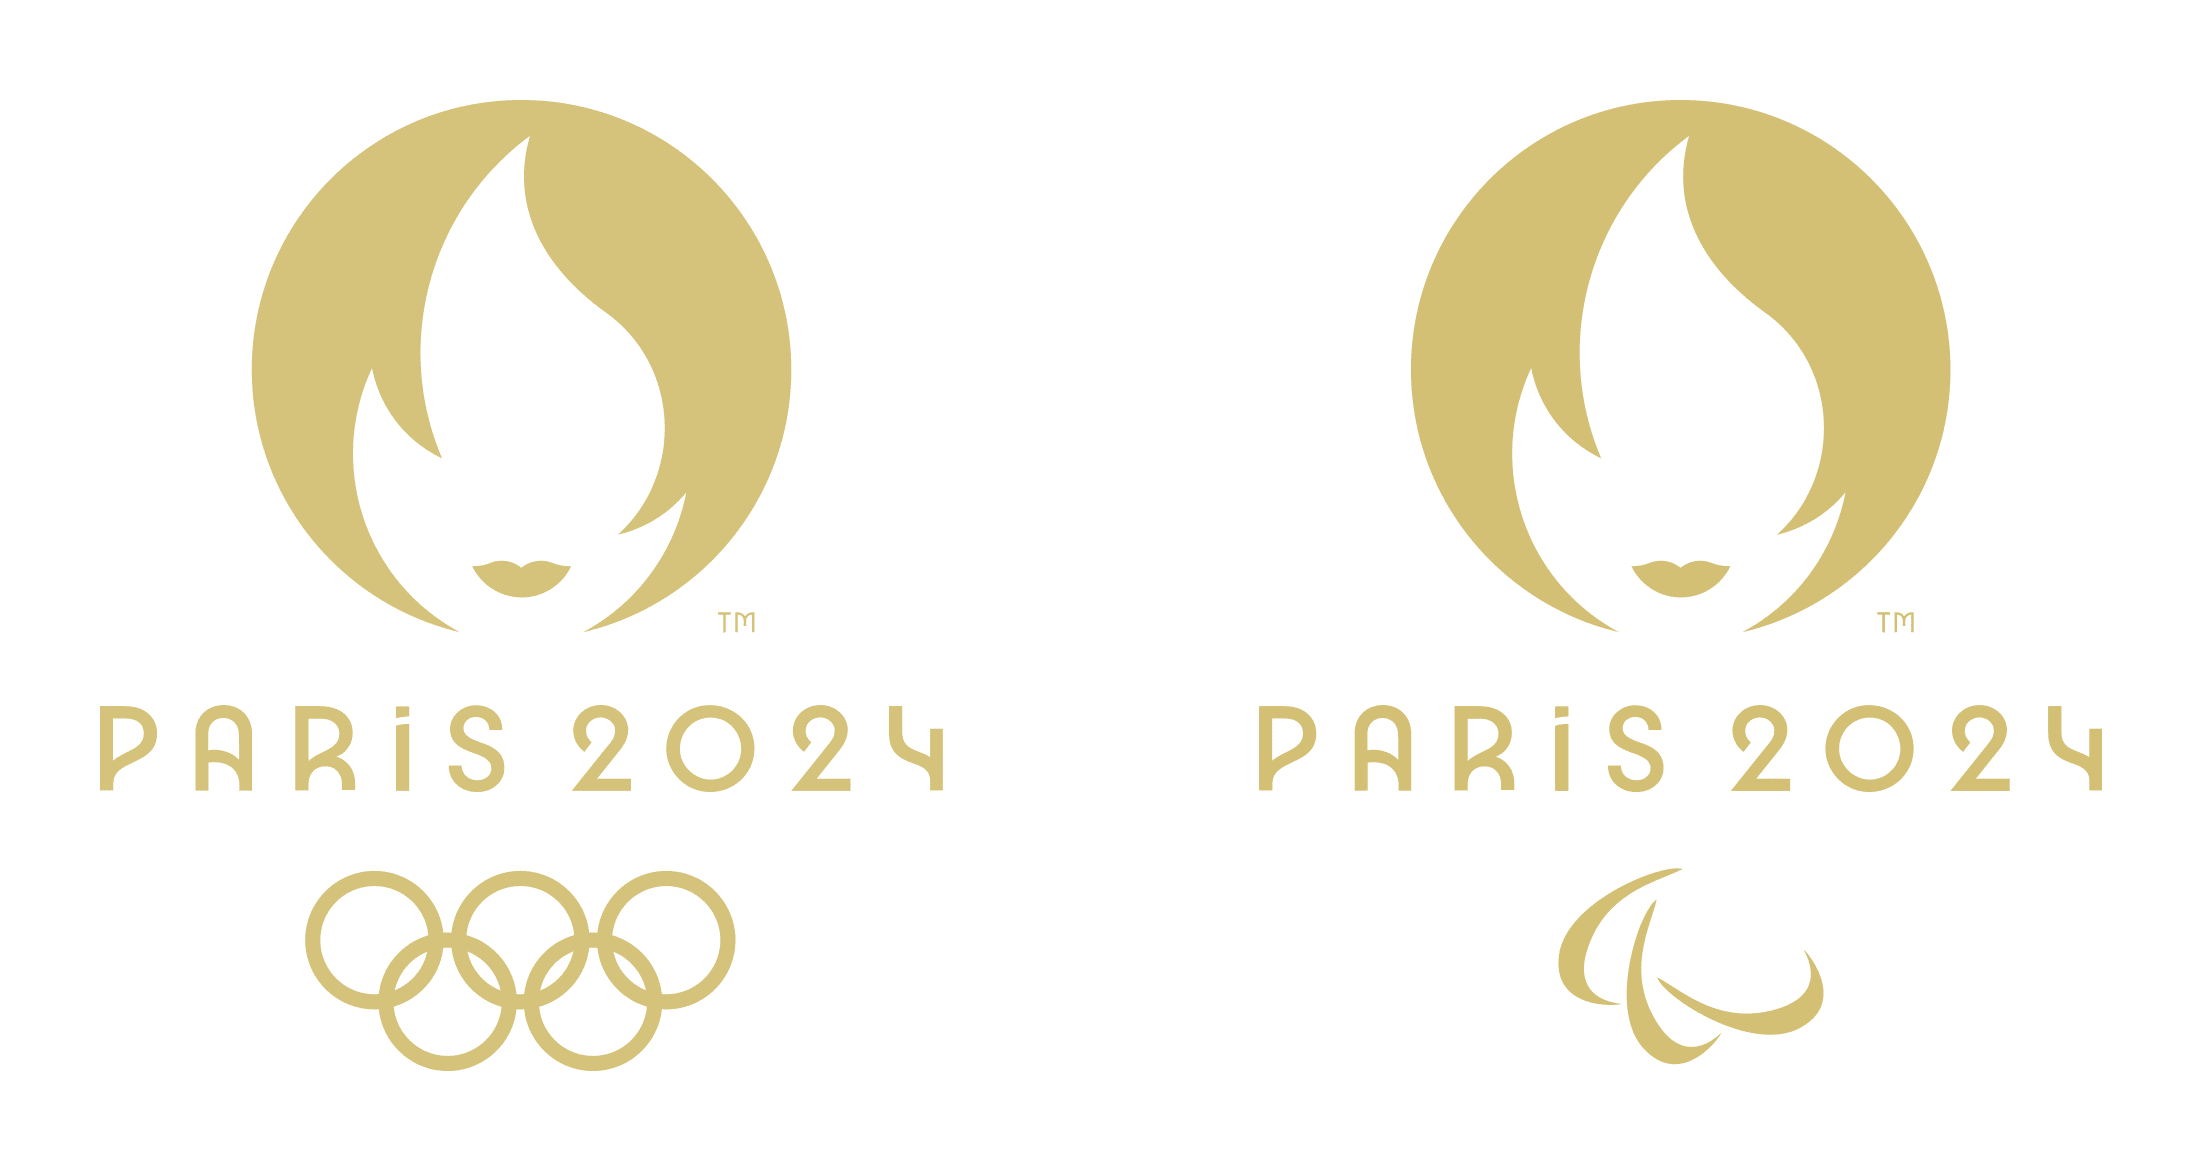 Atletismo nas Olimpíadas – Previsões e dicas de apostas para Paris 2024